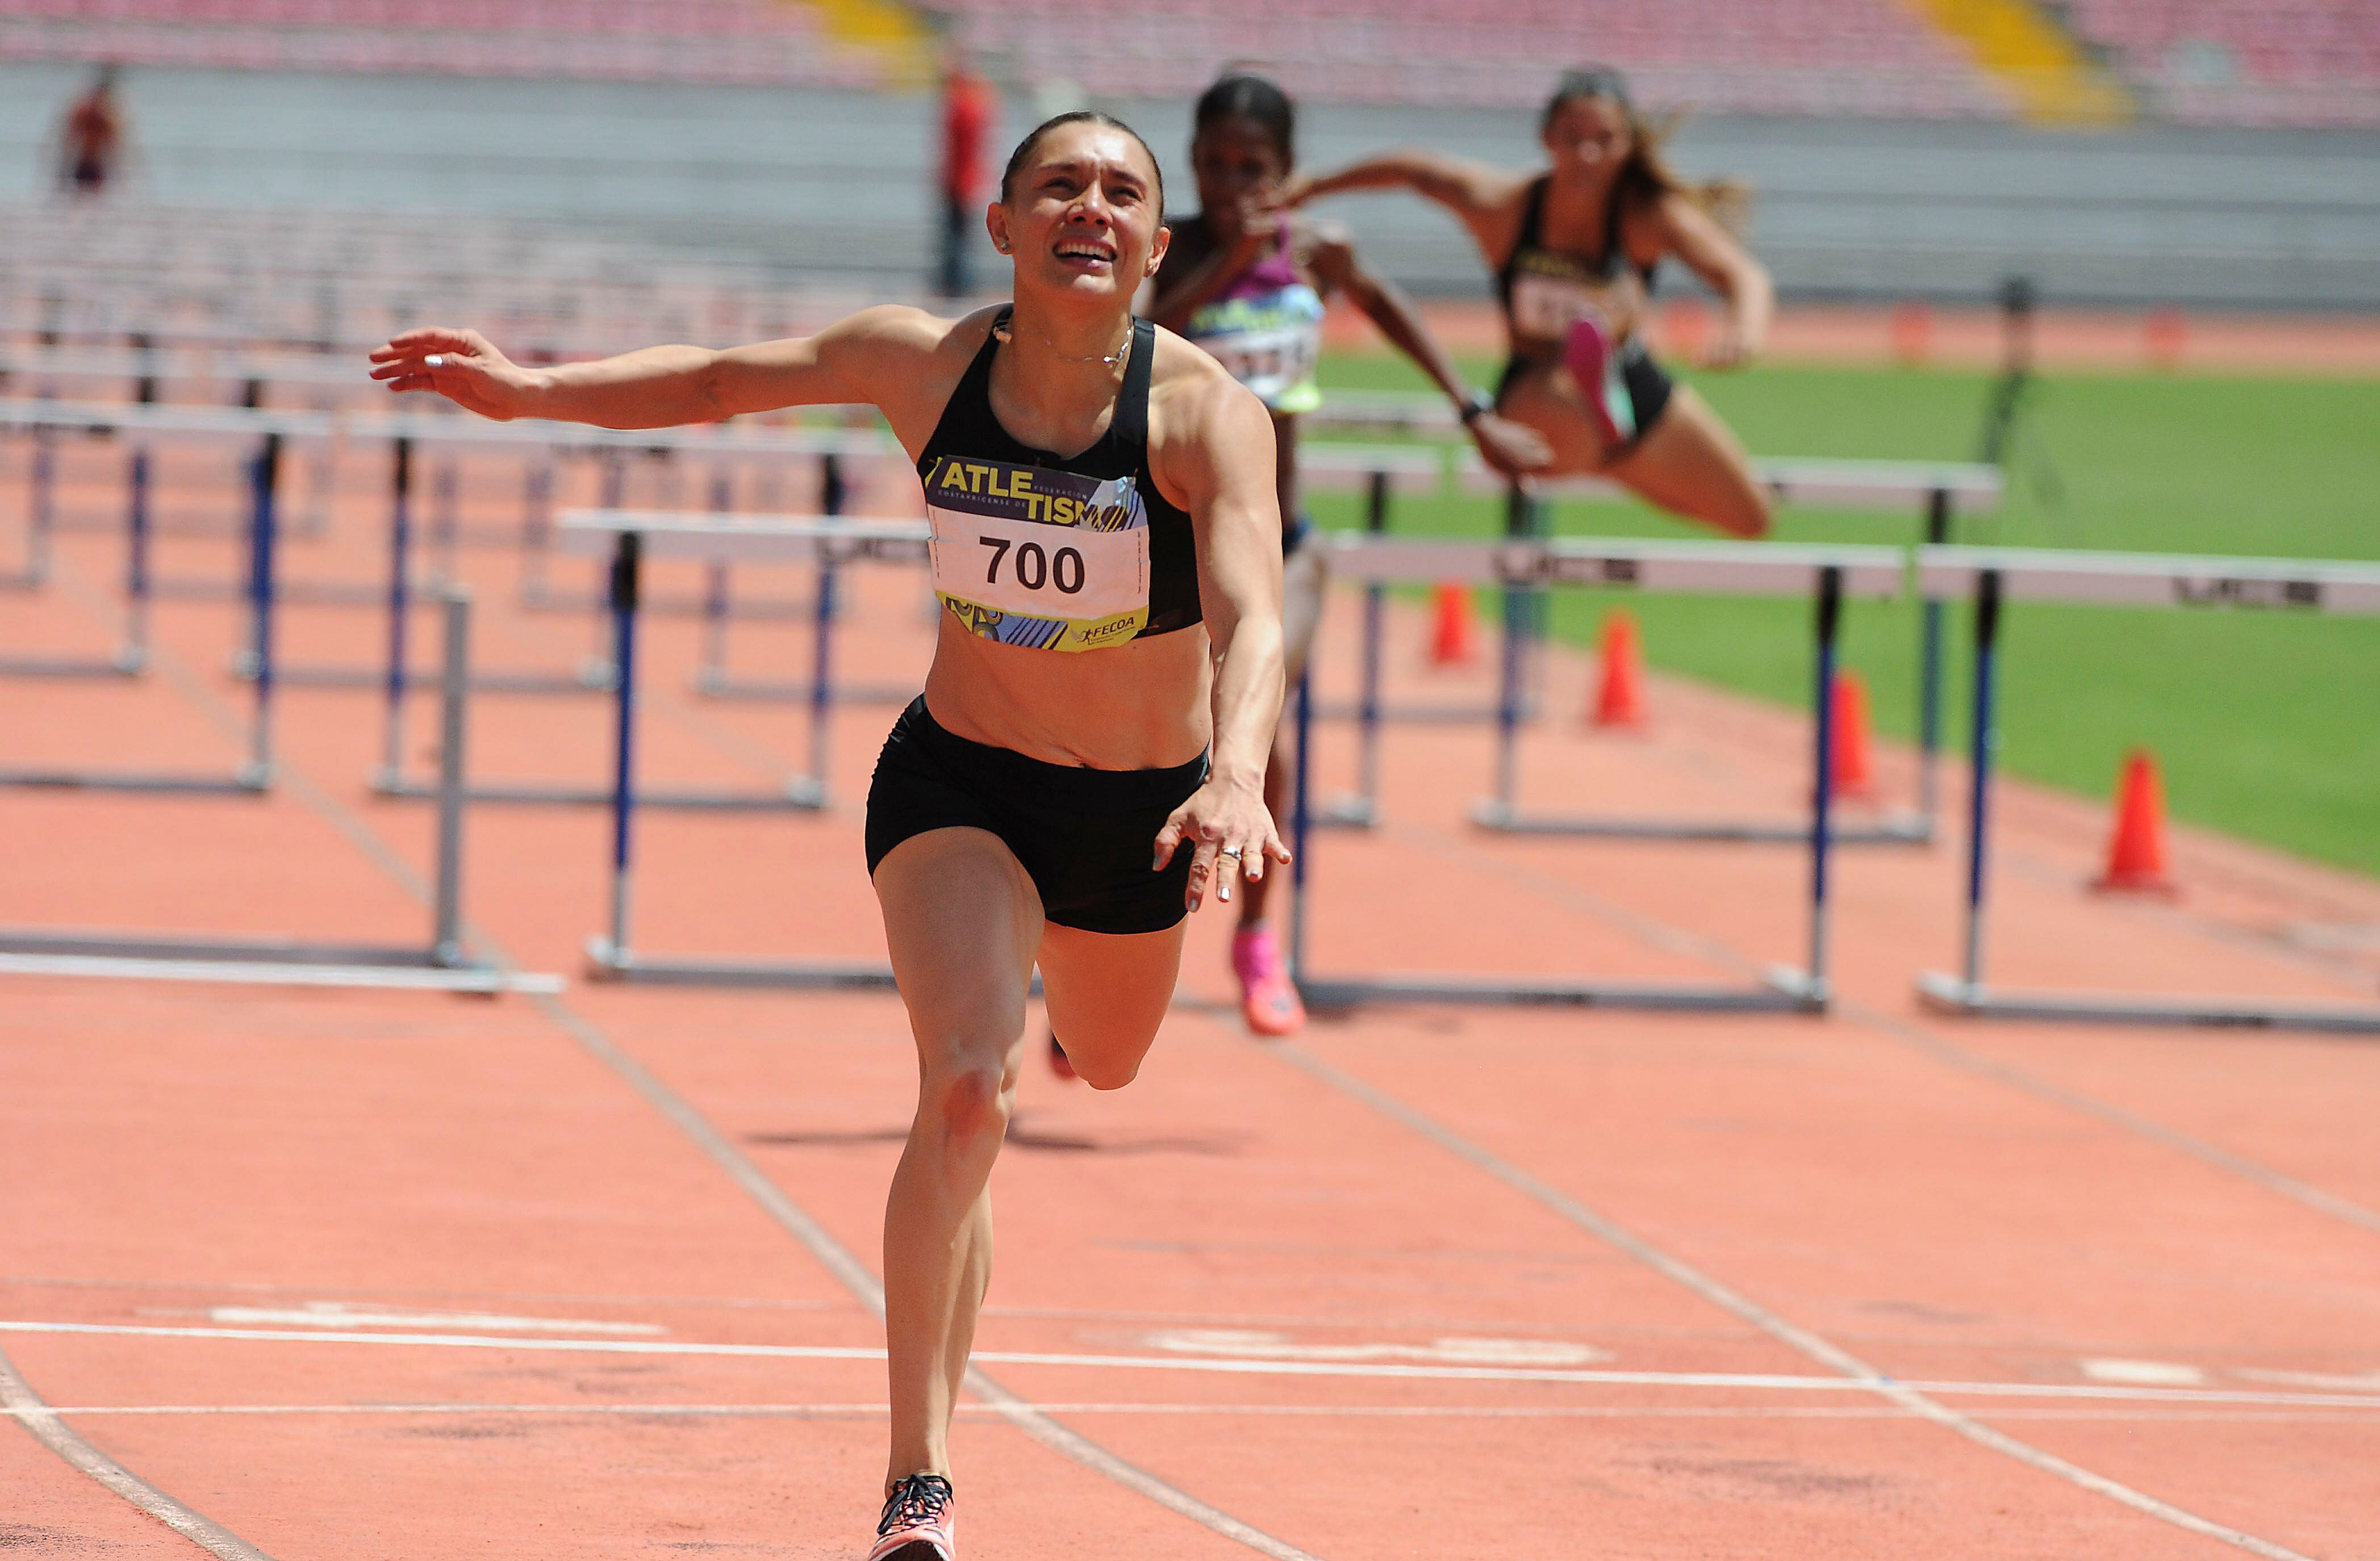 Andrea Vargas cerró muy fuerte el evento de los 100 metros con vallas y quedó a ocho centésimas de la marca a los Juegos Olímpicos de París 2024, en el Campeonato Nacional de Atletismo.    